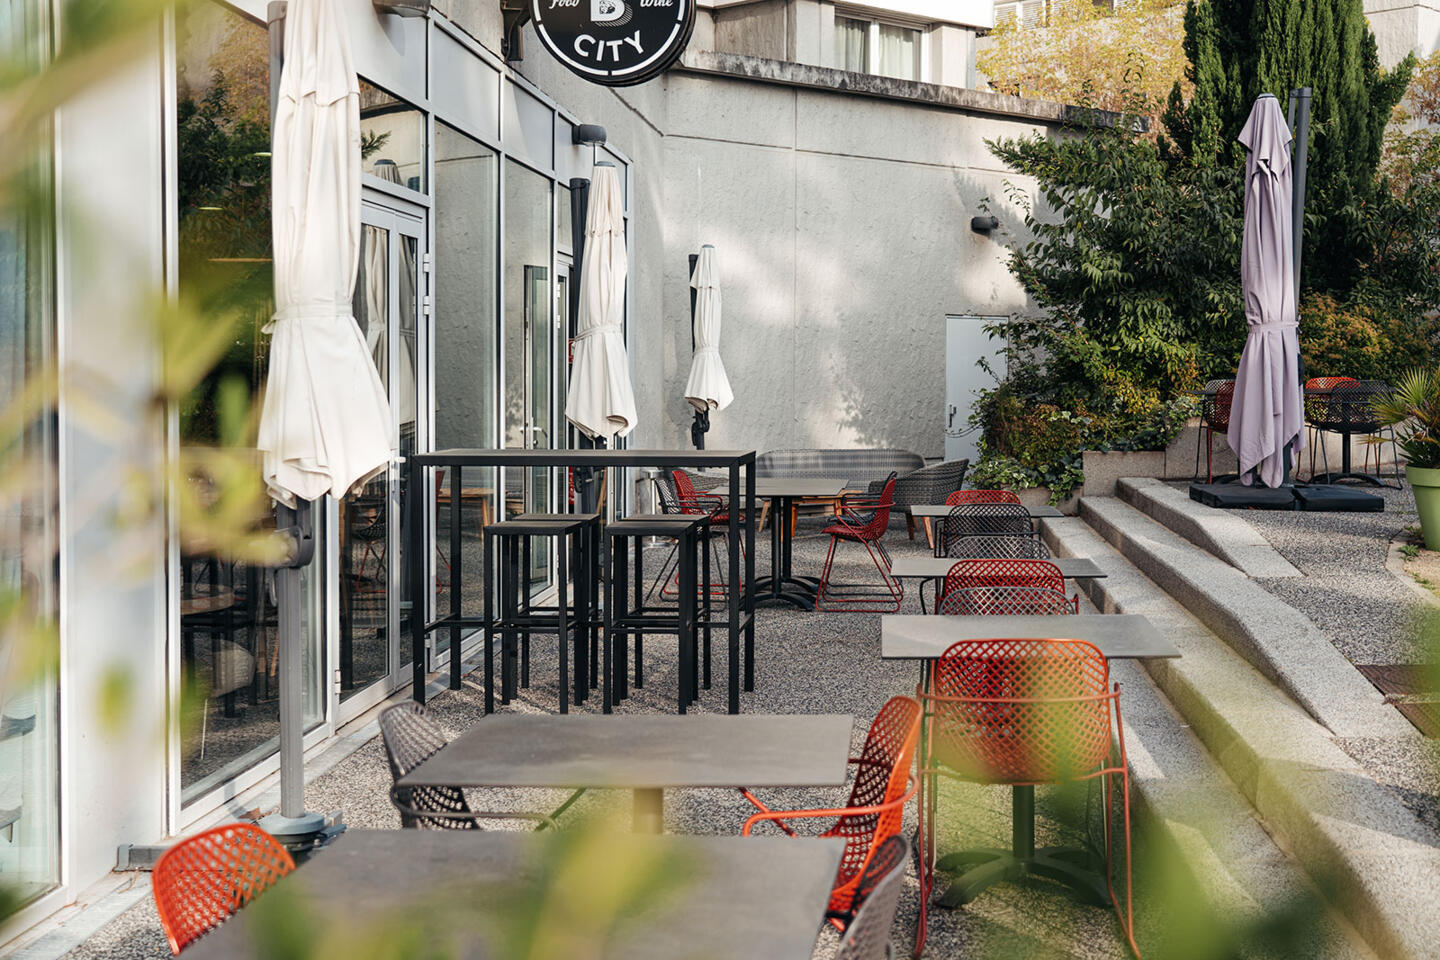 Tranquila terraza del restaurante Bistrot City en Lyon Cité Internationale, con mesas y sillas modernas de metal negro y asientos naranjas, sombrillas cerradas, en un entorno urbano con toques de vegetación, que invita a la relajación.